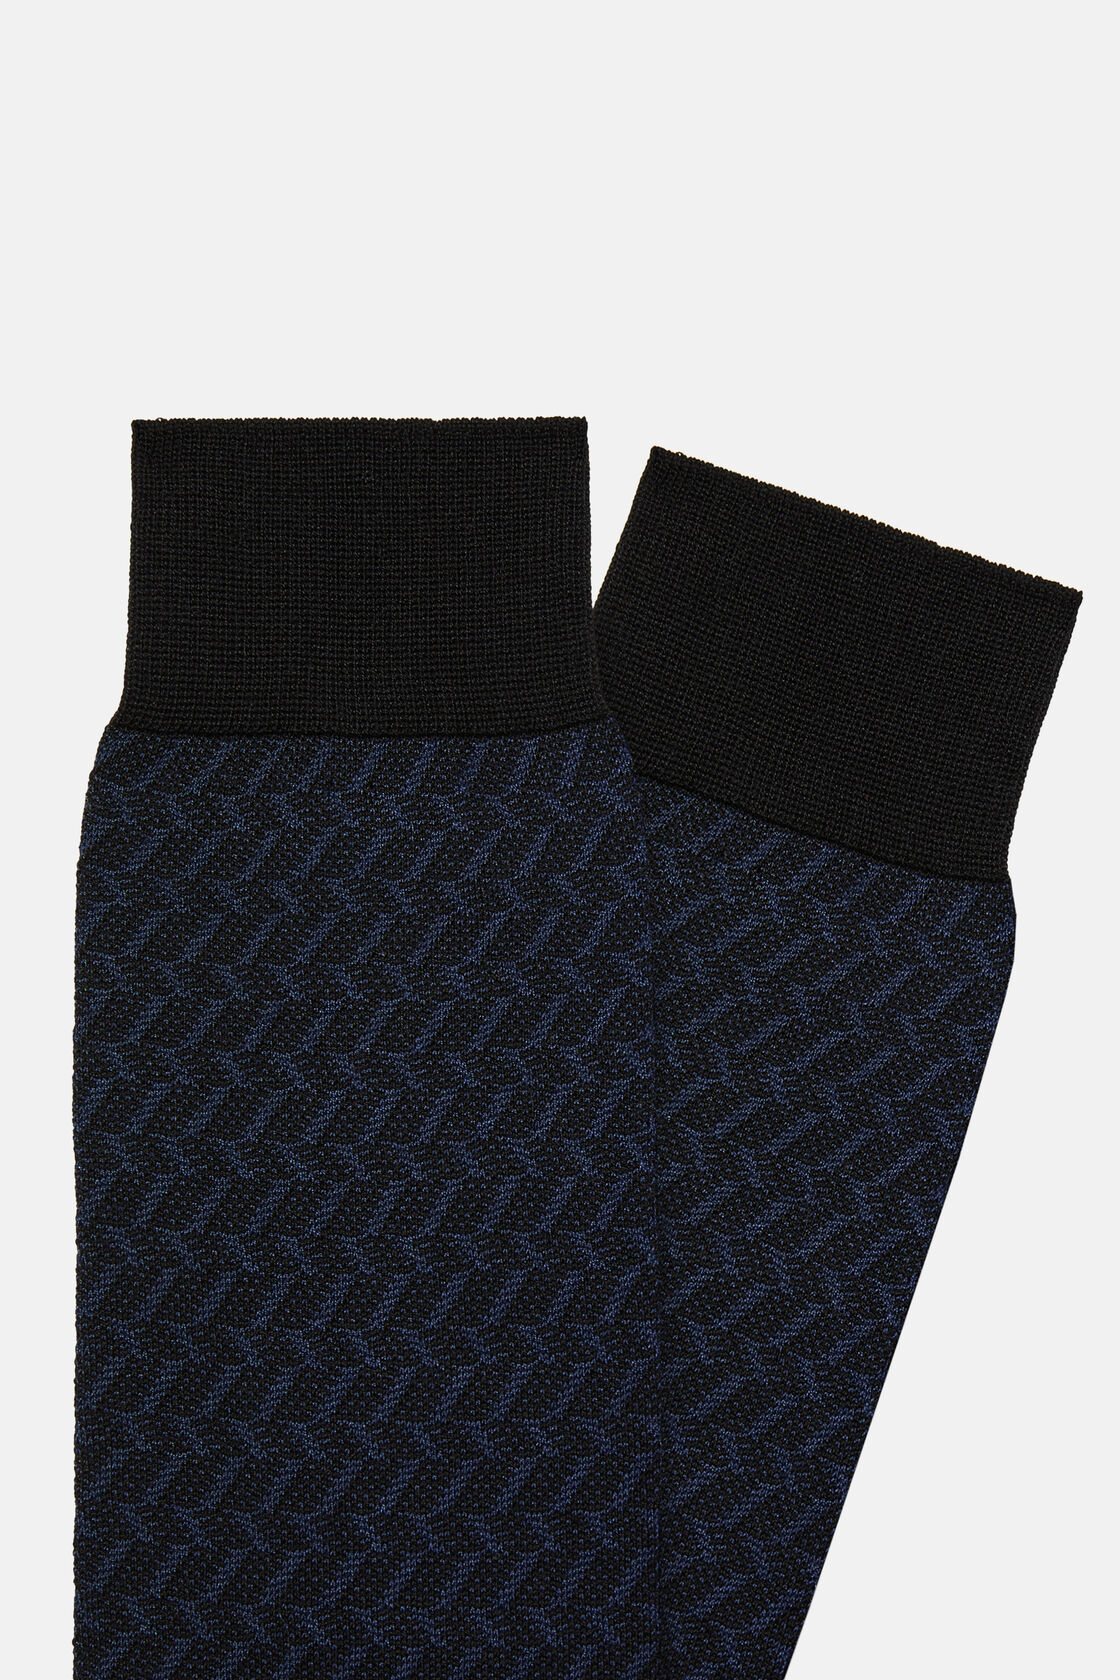 Mikromintázatú zokni pamutkeverékből, Navy blue, hi-res